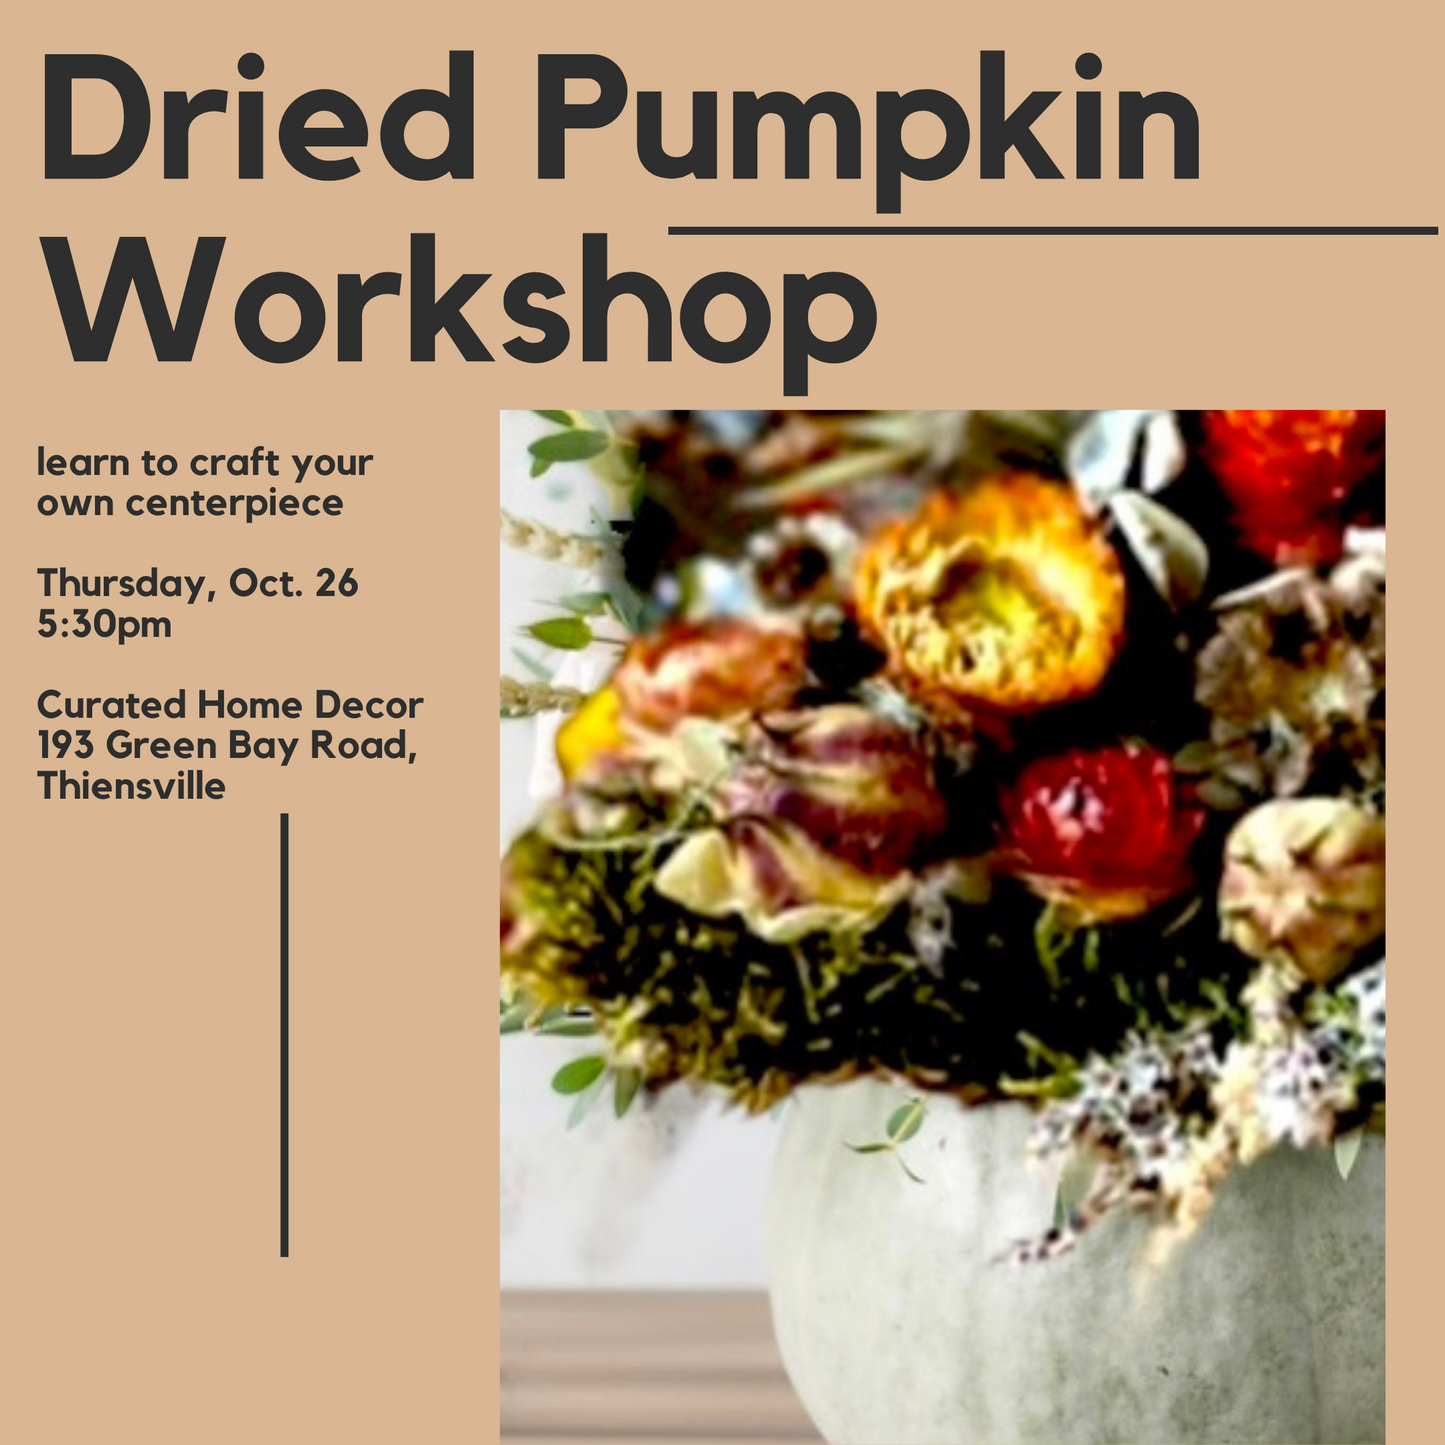 Dried Pumpkin Workshop